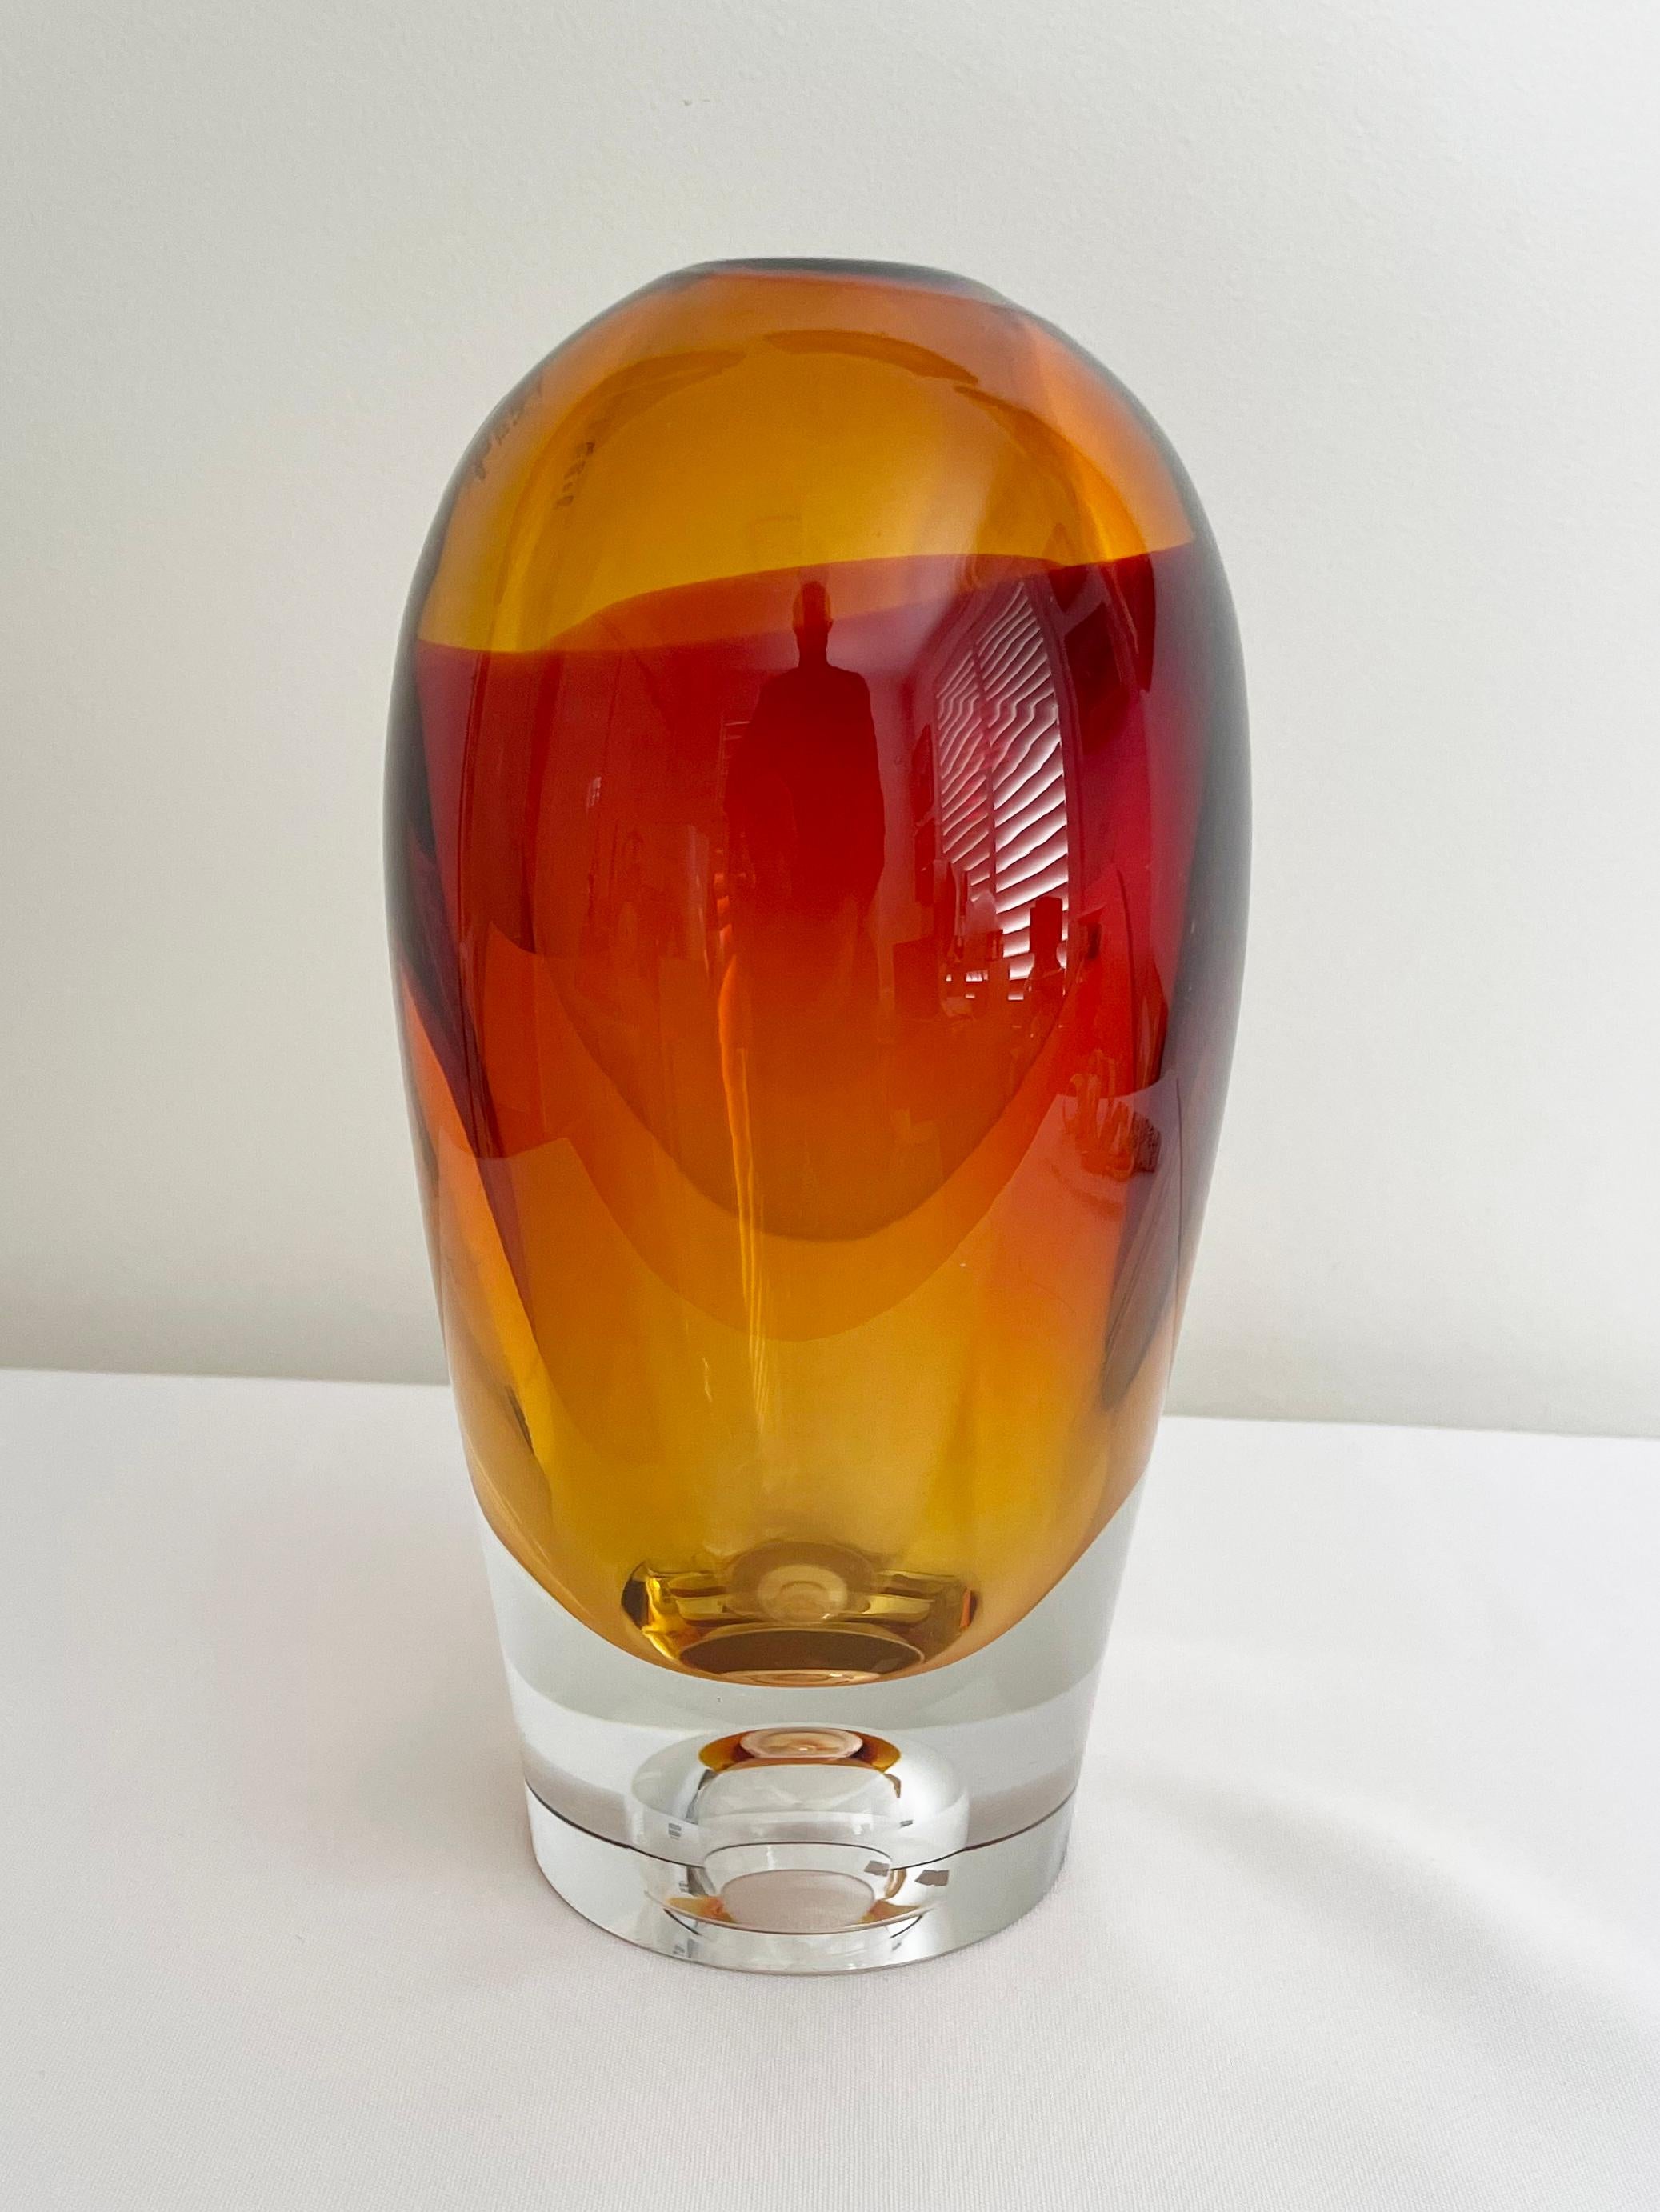 Die orangefarbene Vase der Serie Vision von Kosta Boda wurde von dem legendären Glaskünstler Göran Wärff entworfen.

Vision wird in der Glashütte Kosta in Schweden mundgeblasen und ist Teil der Kosta Boda Artist Collection'S.